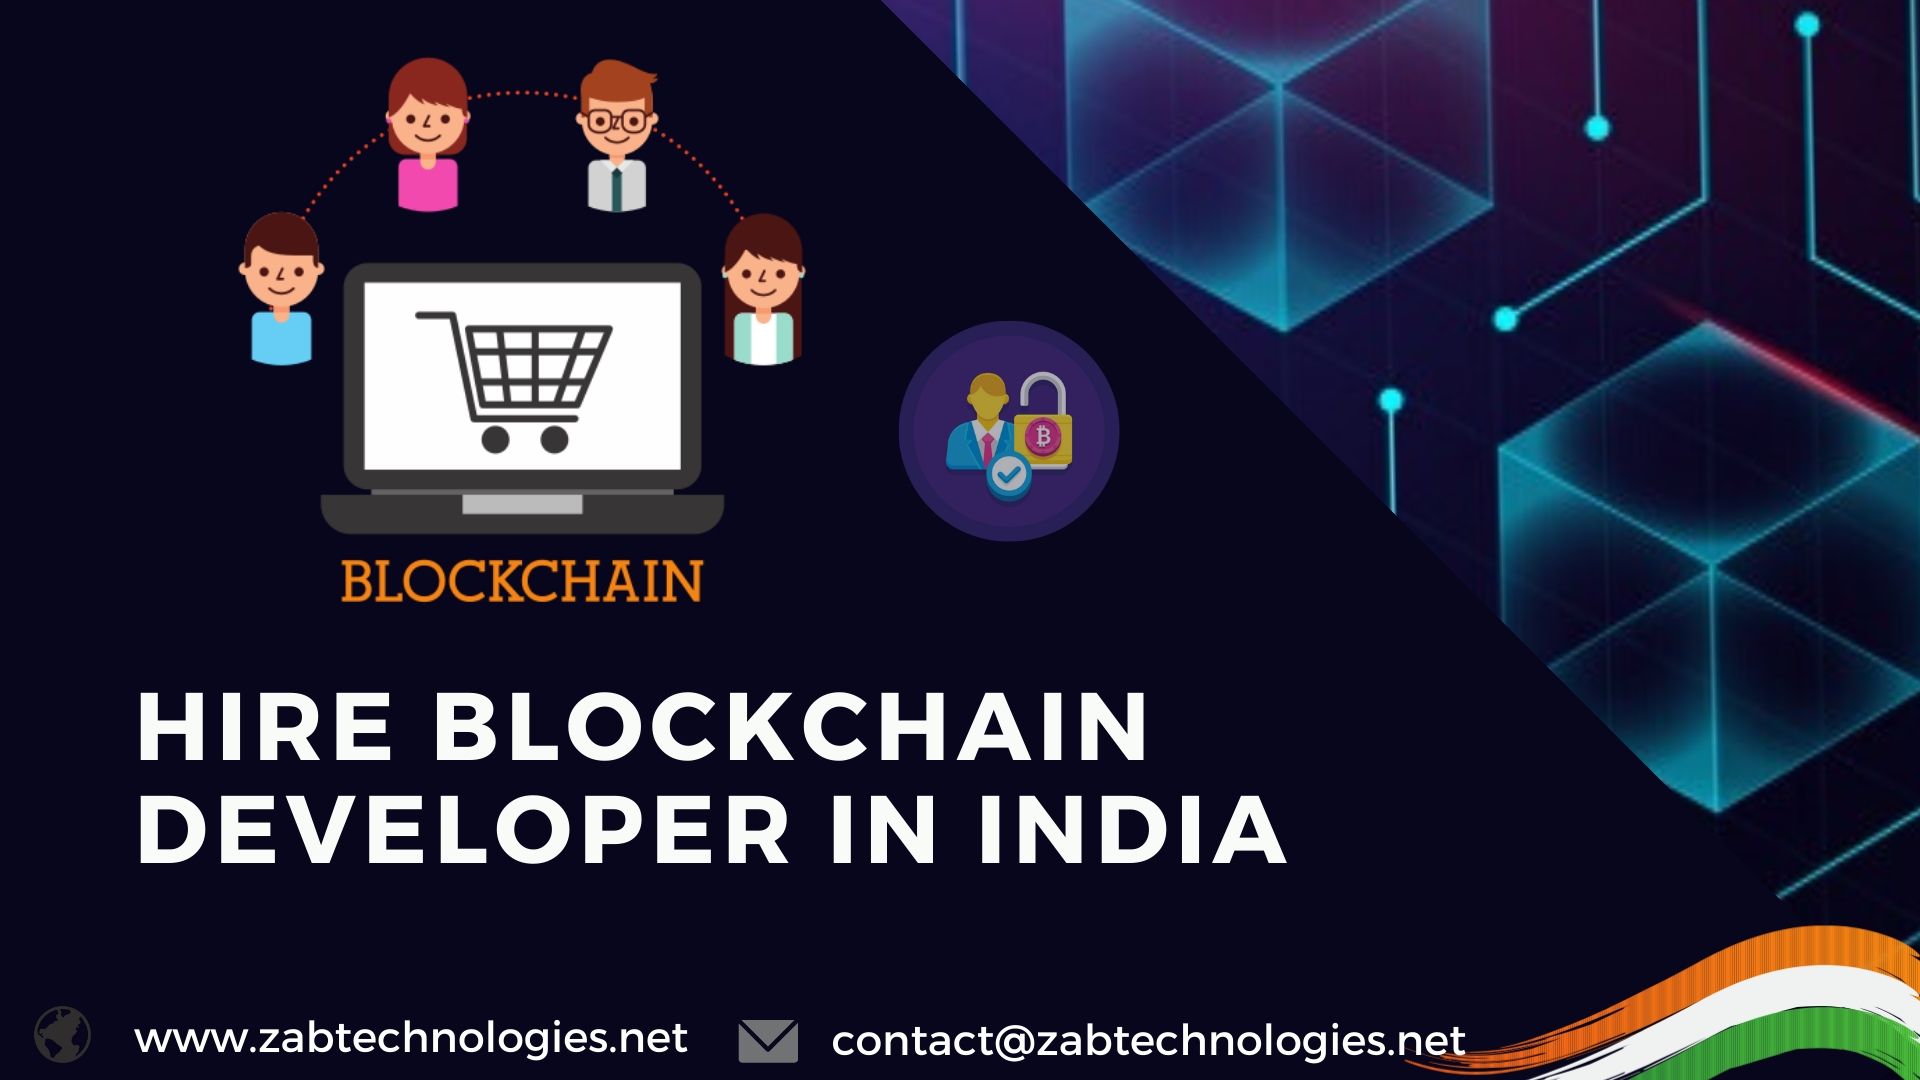 Hire Blockchain Developer in india